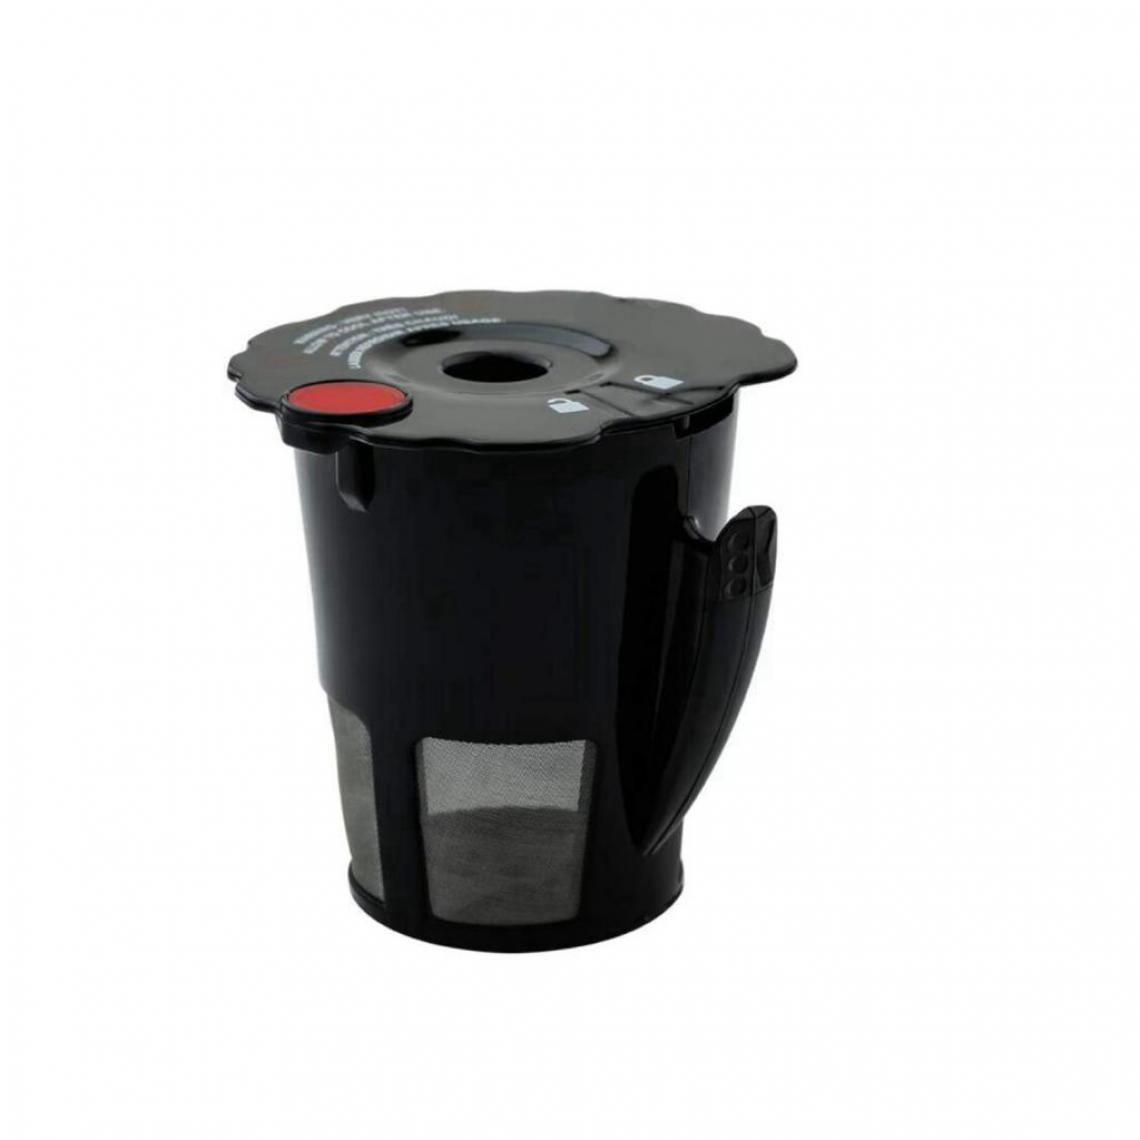 marque generique - Lavable Rechargeable Réutilisable Café Filtre Capsule Tasse avec Couvercle pour KEURIG 2.0 Café Maker K200 K350 K400 K460 K460 K500 k575 - Dosette café